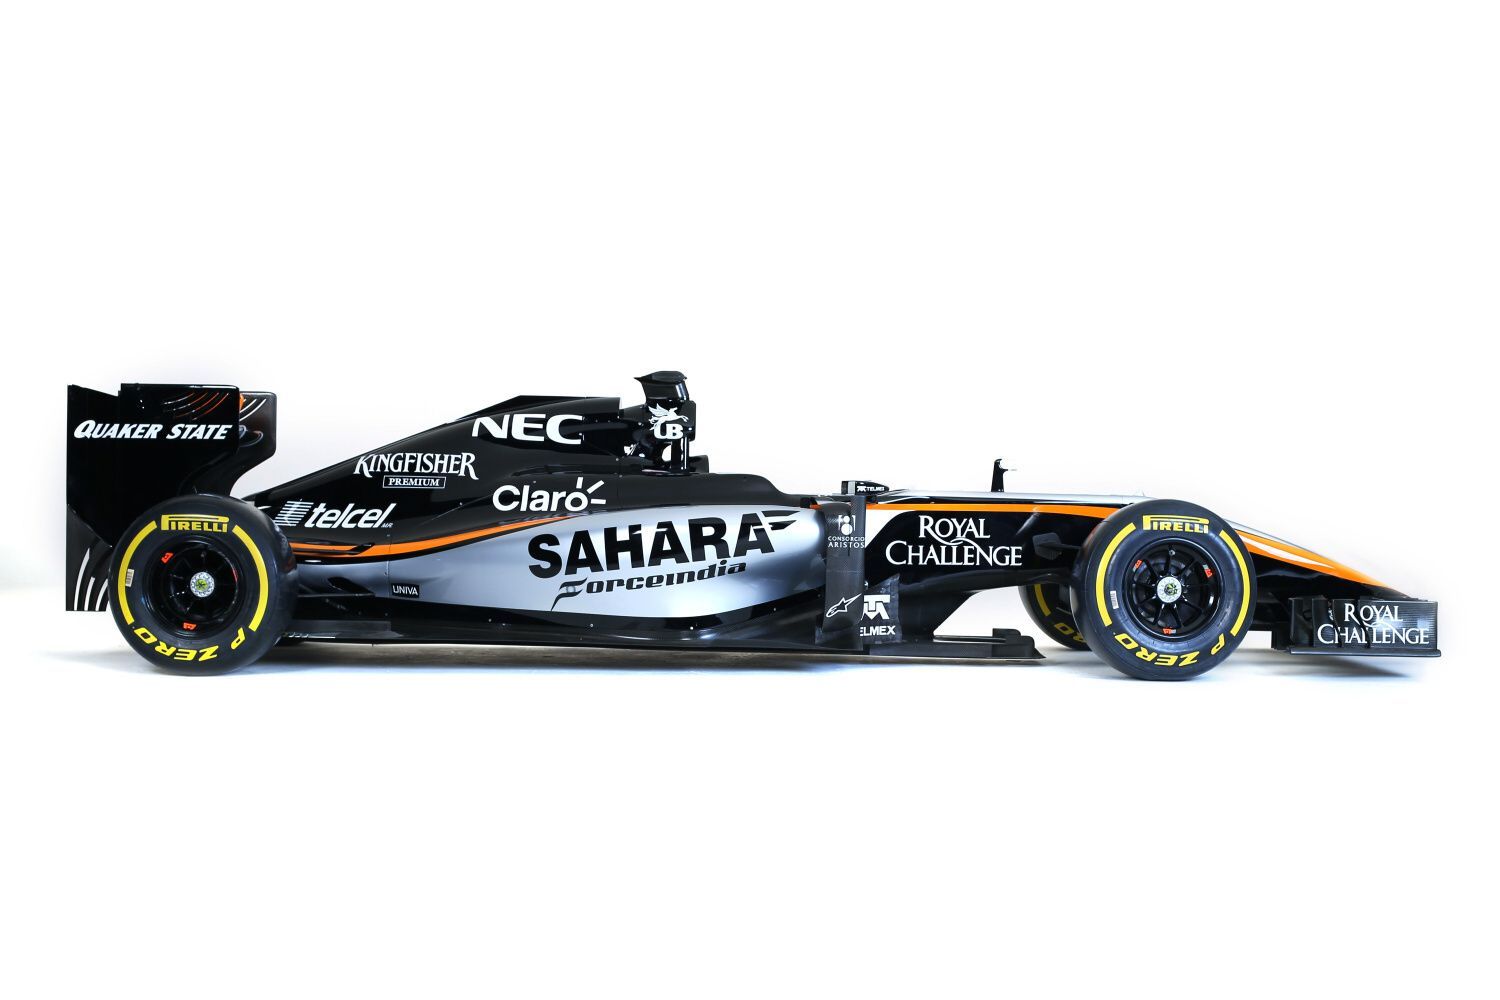 F1: Force India VJM08 (2105)